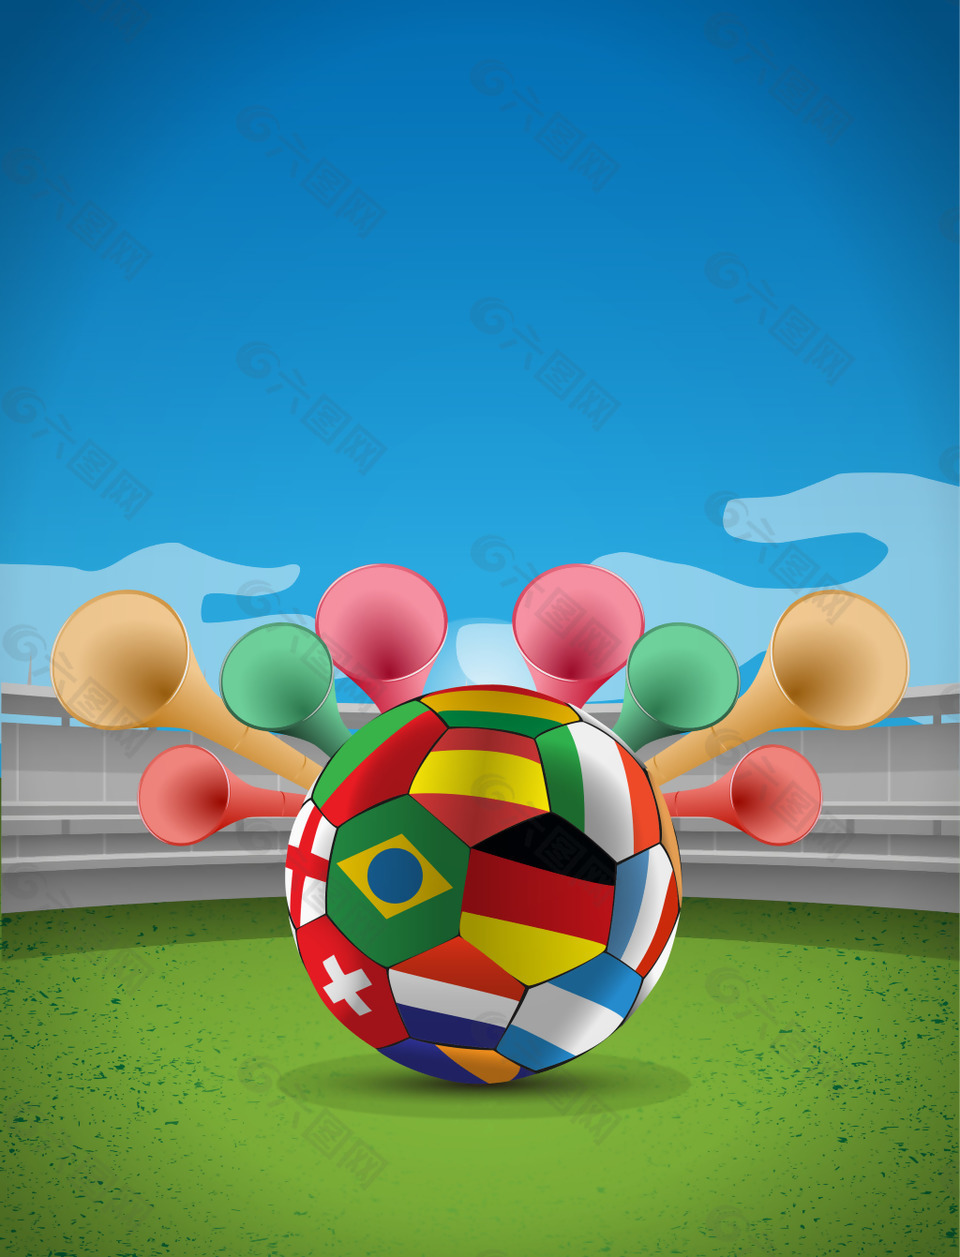 世界足球竞技足球赛矢量海报背景素材